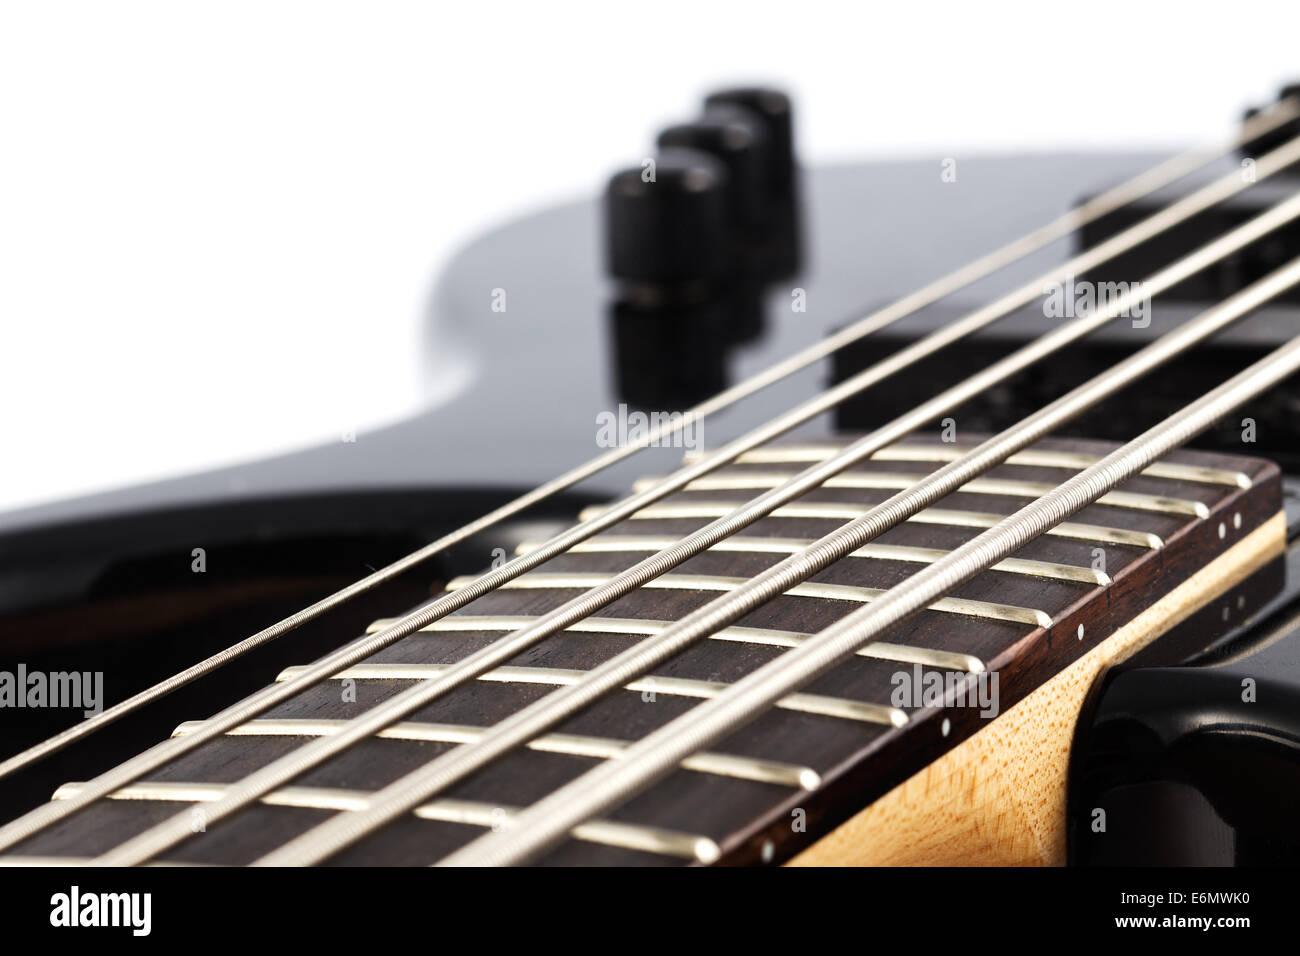 Dettaglio foto di un basso elettrico chitarra su sfondo bianco Foto Stock